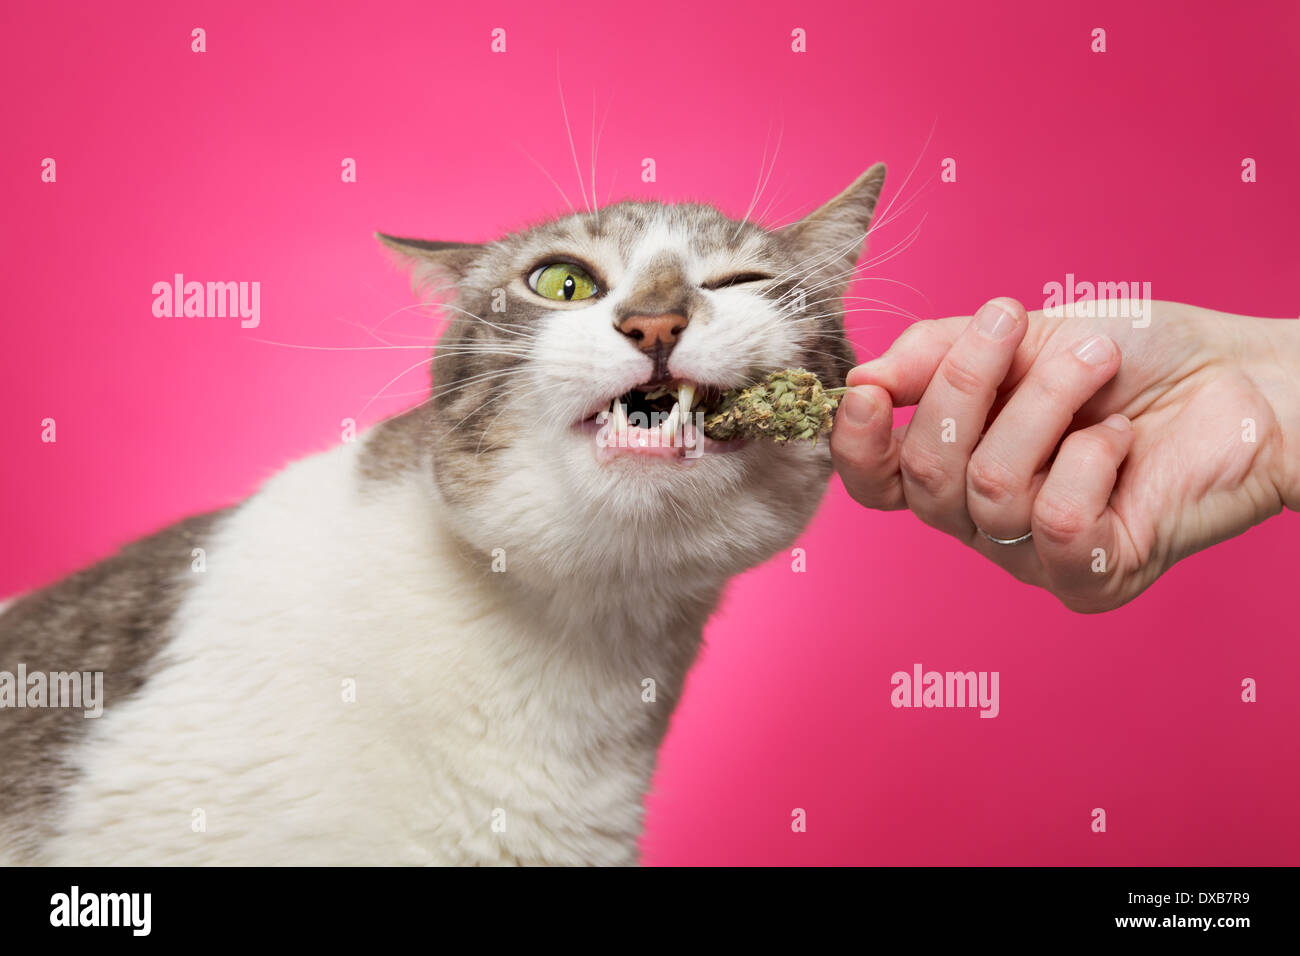 Cat tirando erba gatta fresco dal proprietario della mano. Foto Stock